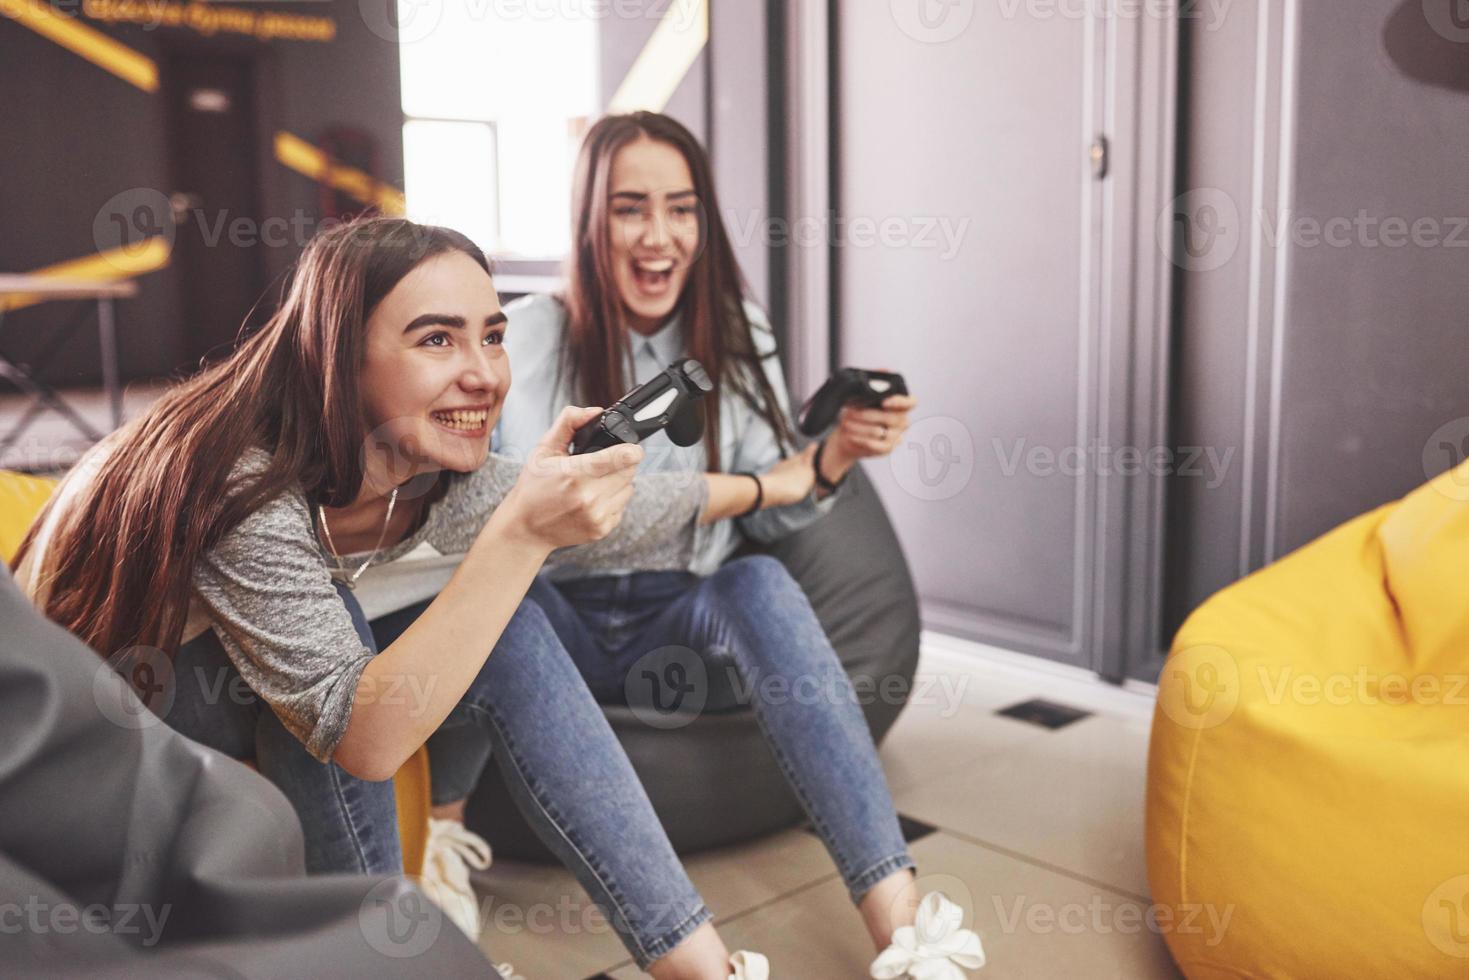 tweelingzusjes spelen op de console. meisjes houden joysticks in hun handen en hebben plezier foto